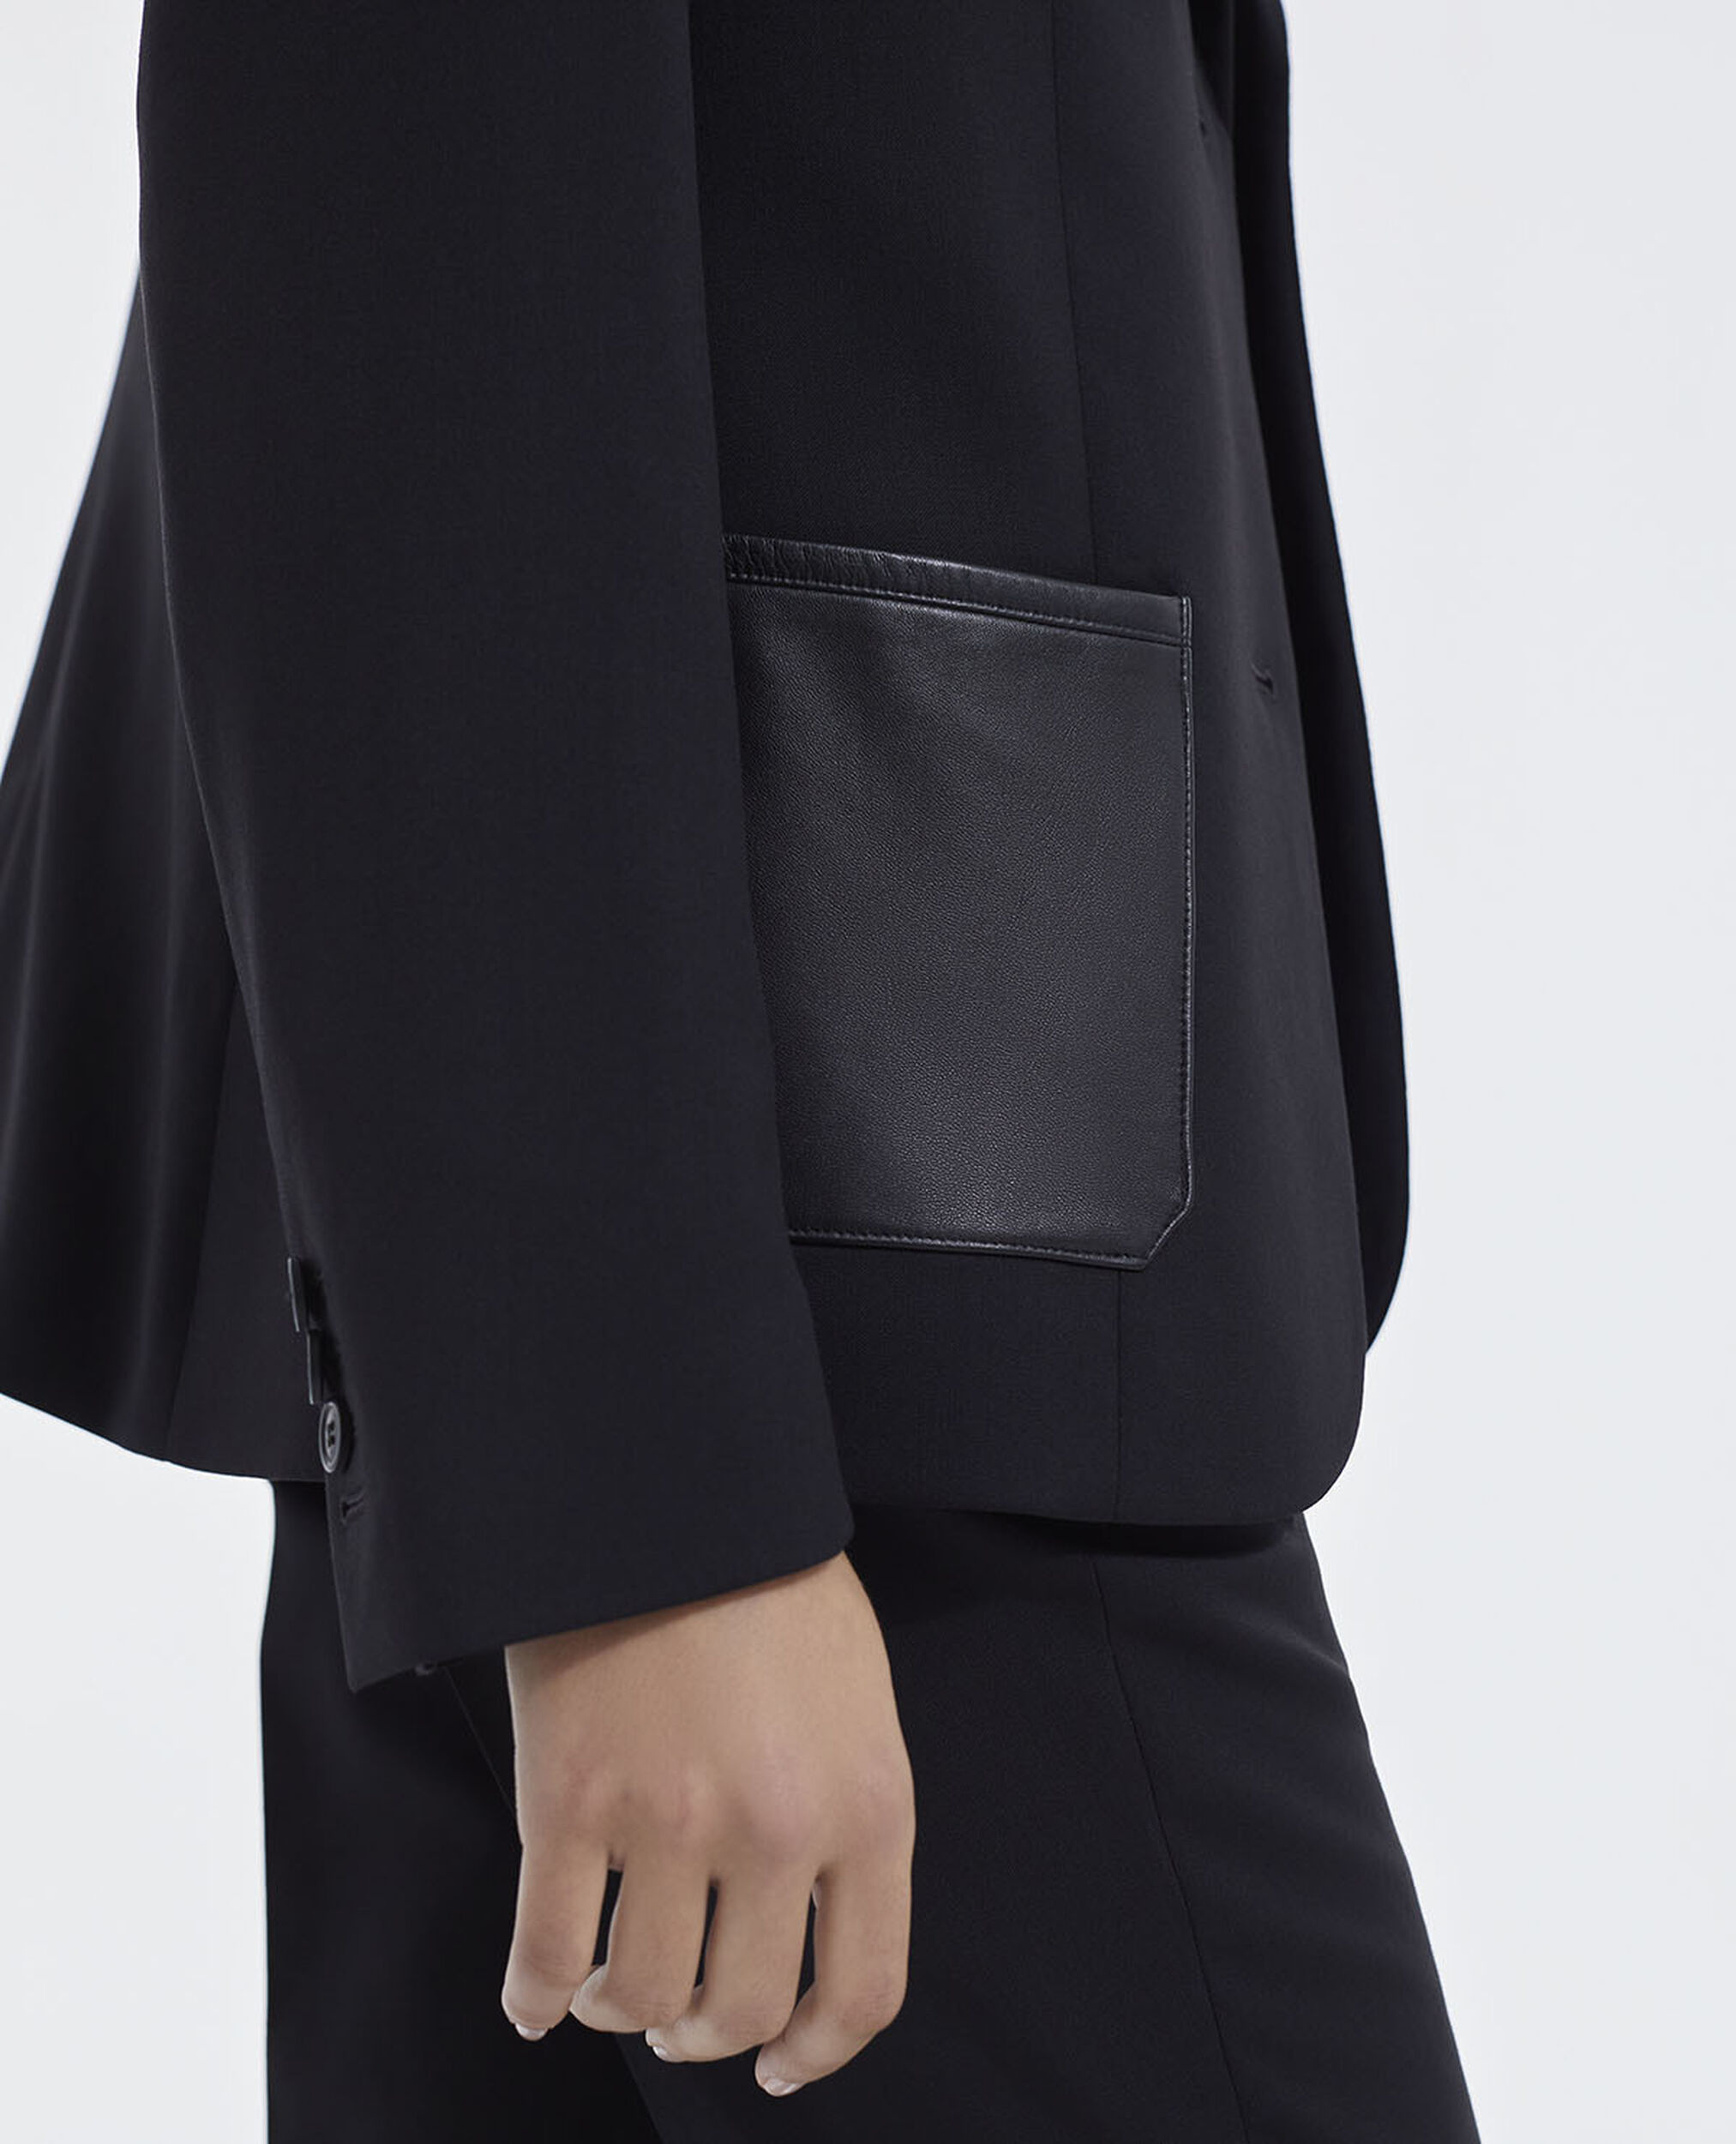 Veste laine noire ajustée poches cuir, BLACK, hi-res image number null